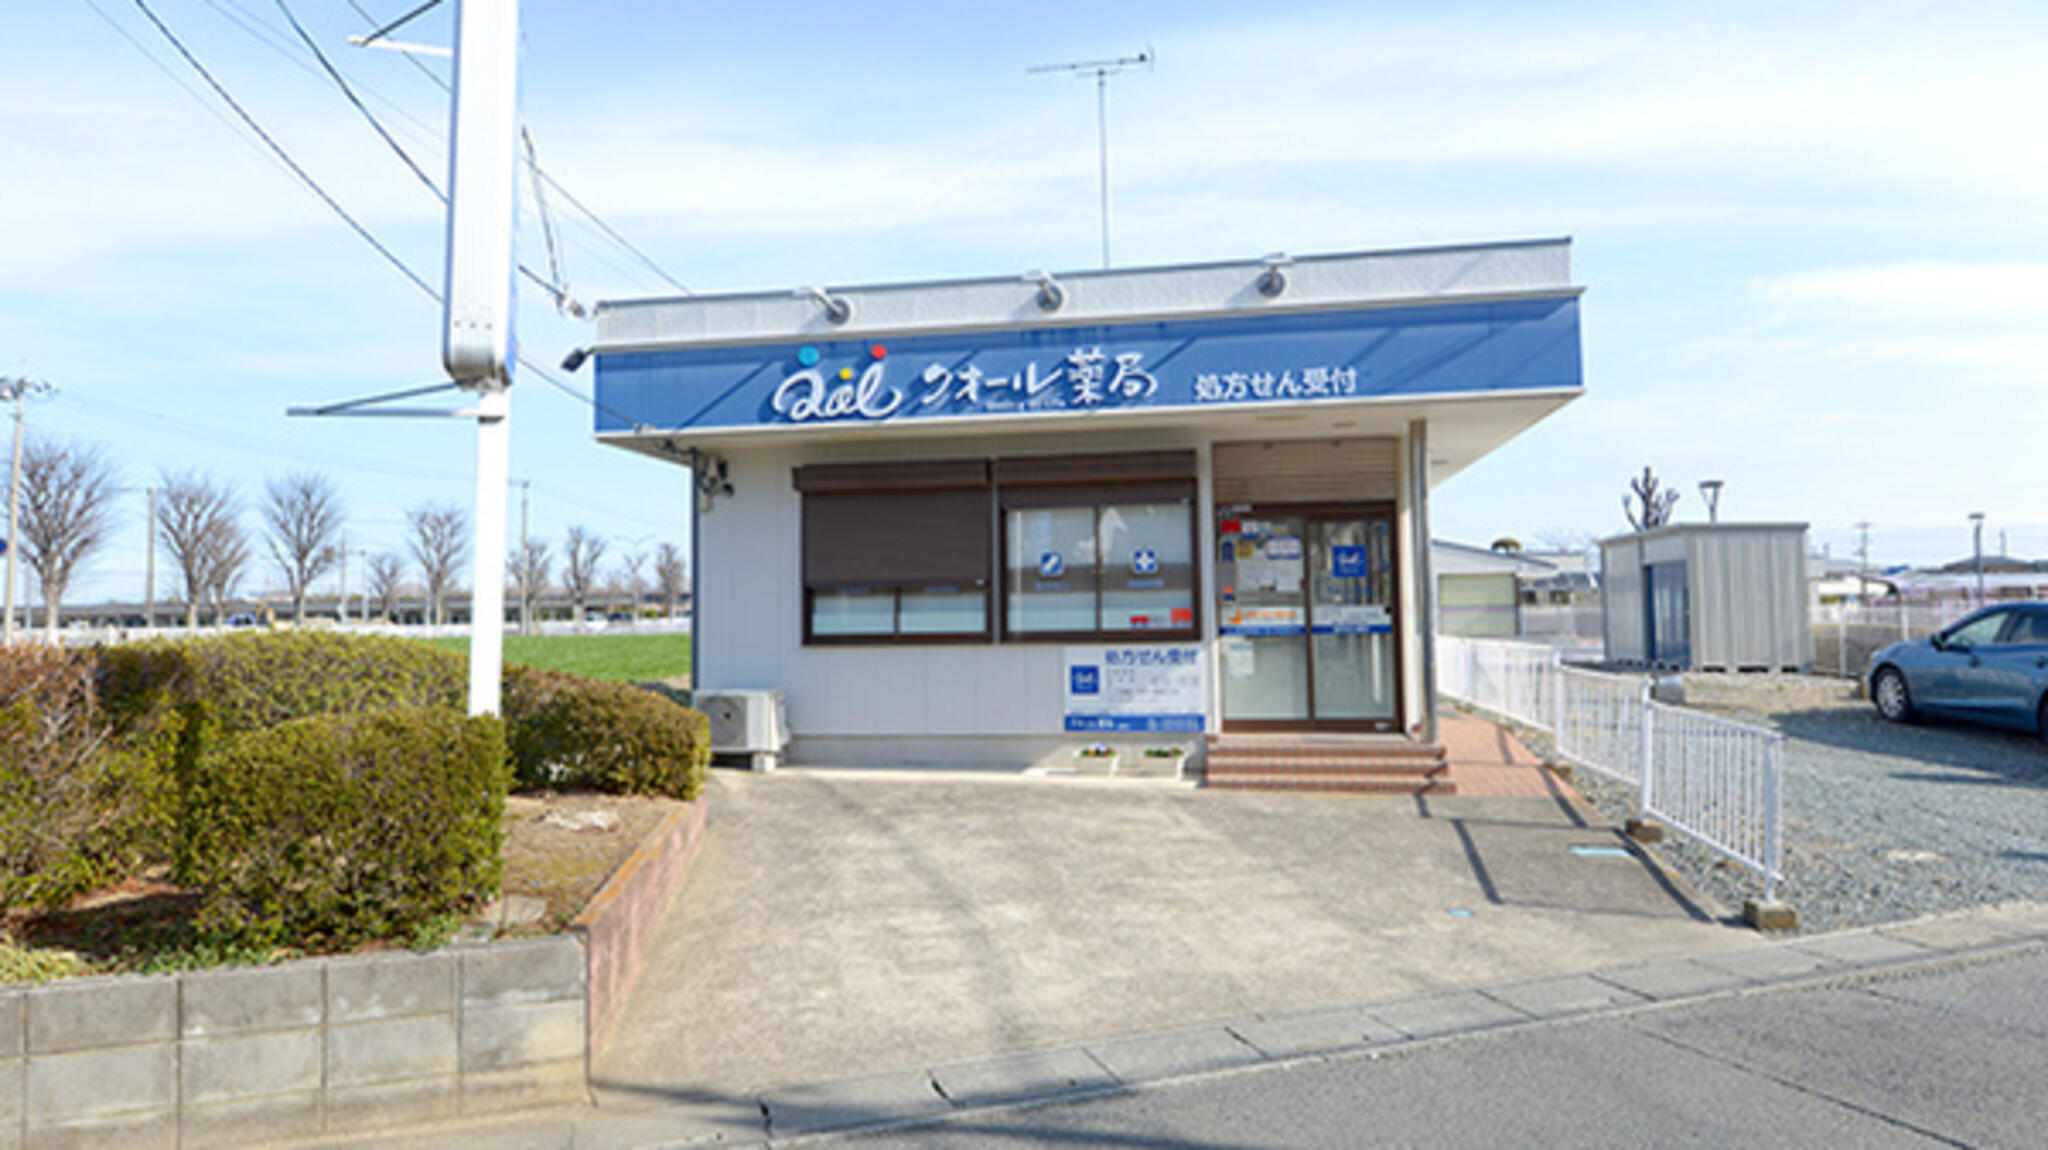 クオール薬局 鎌塚店の代表写真3